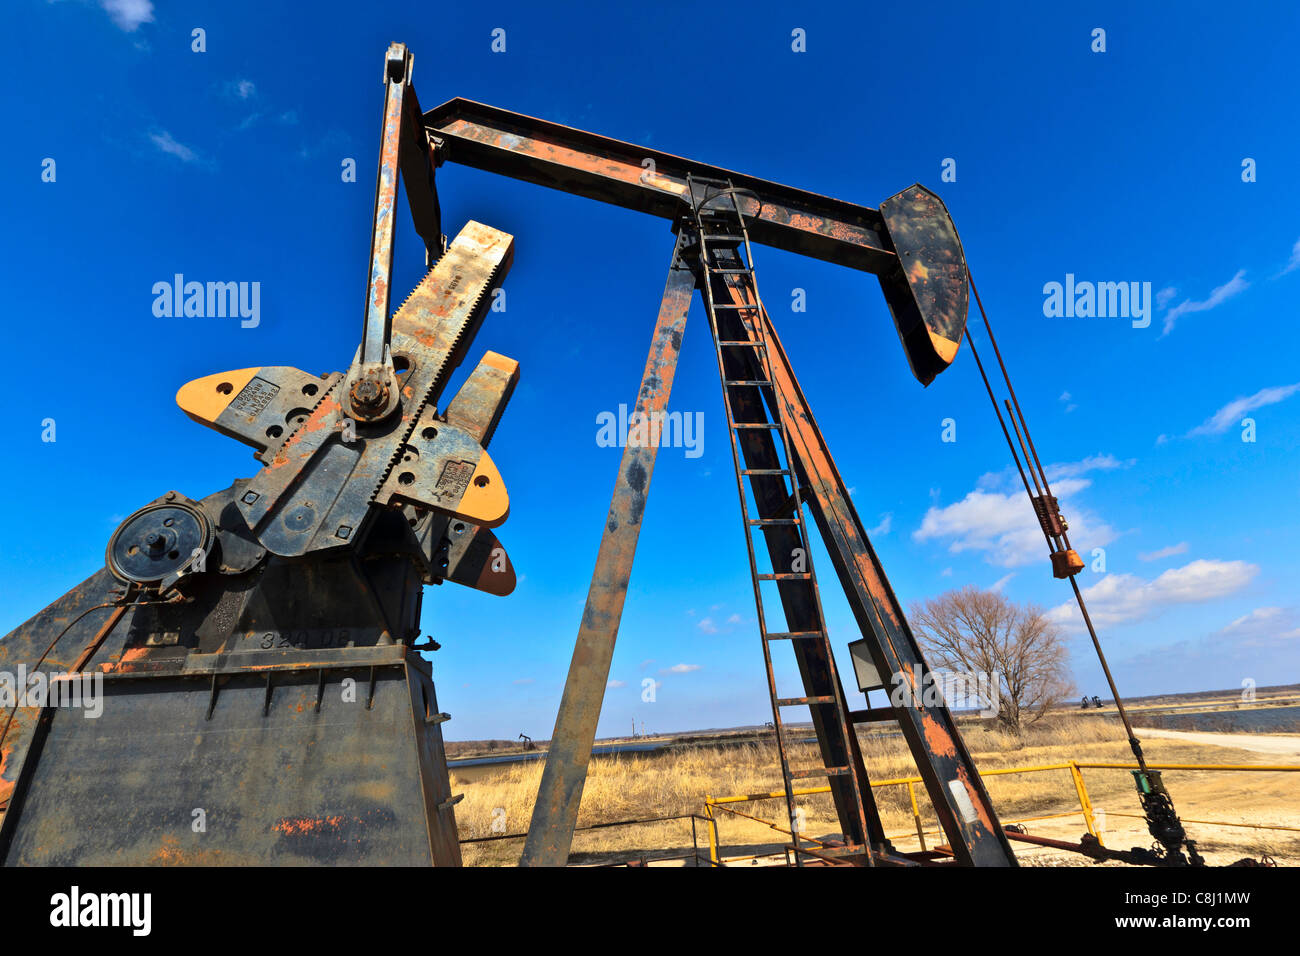 Trivelle di petrolio immagini e fotografie stock ad alta risoluzione - Alamy